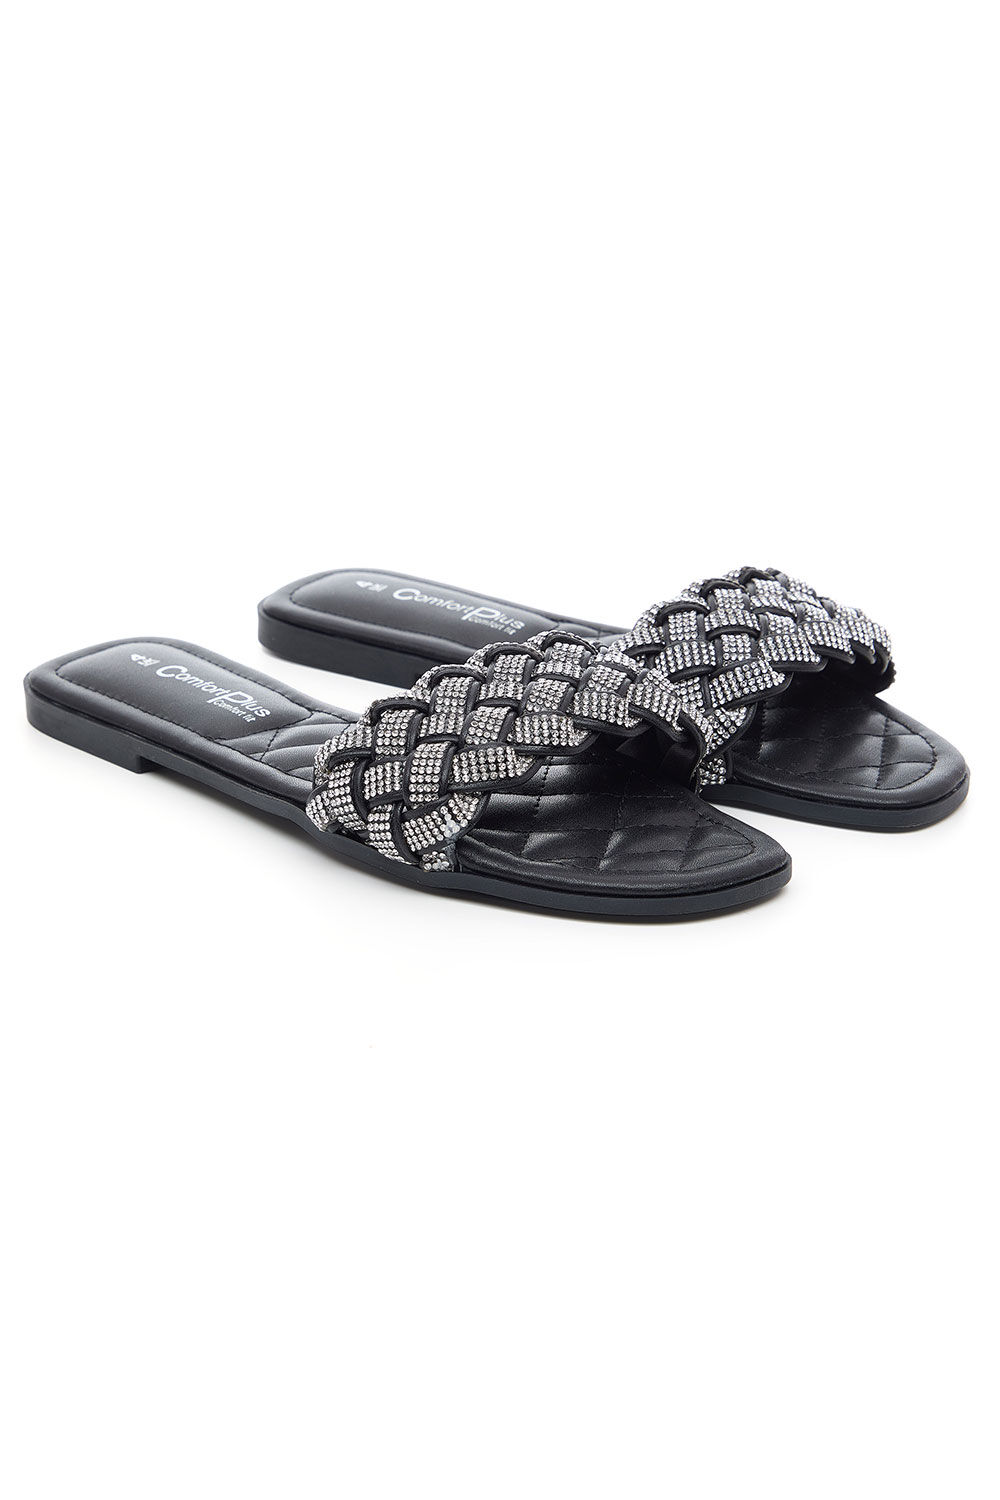 Comfort Plus Black - Diamante Weave Front Band Flat Sandals, Size: 3